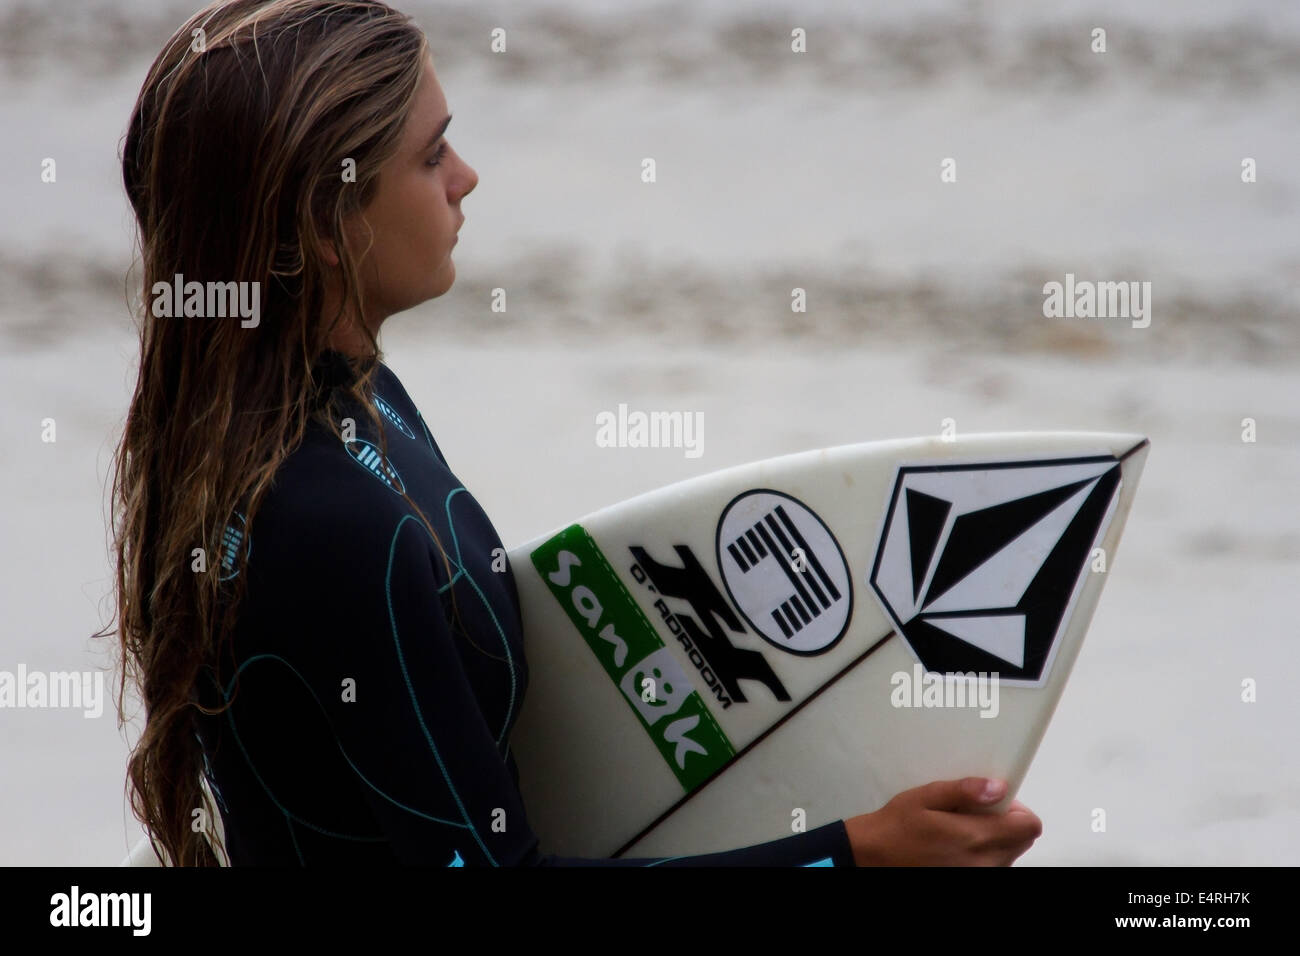 La compétition de surf du Philippe EVEN Bro-Am a tenu à Encinitas, en Californie, aux États-Unis le 12 juillet 2014 Banque D'Images